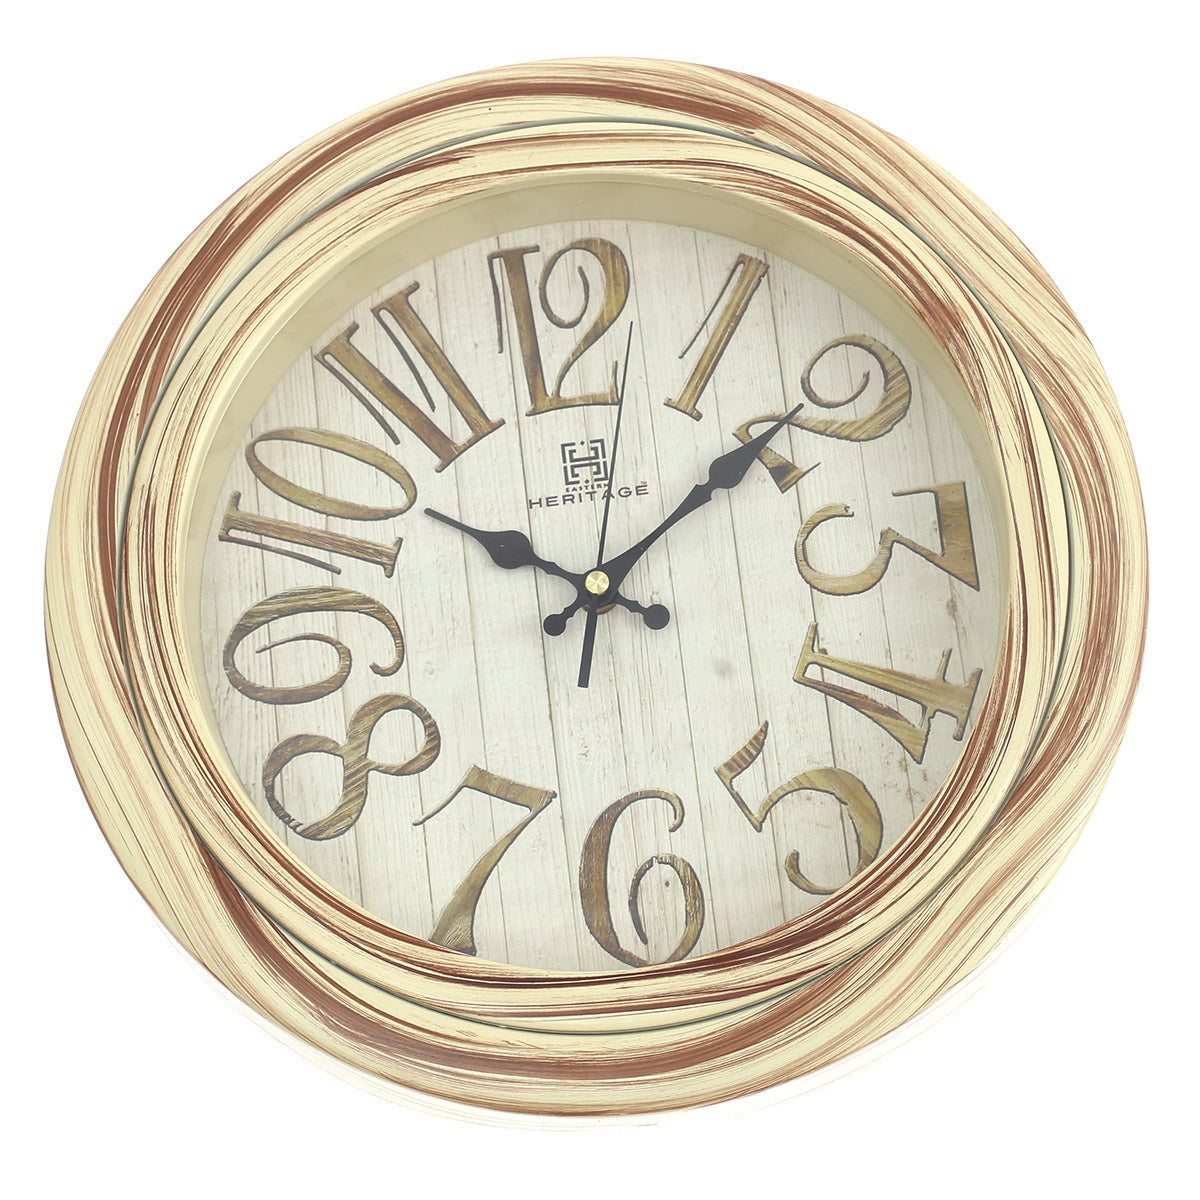 Oreo Wall Clock.Brown.CLK-003-SIL